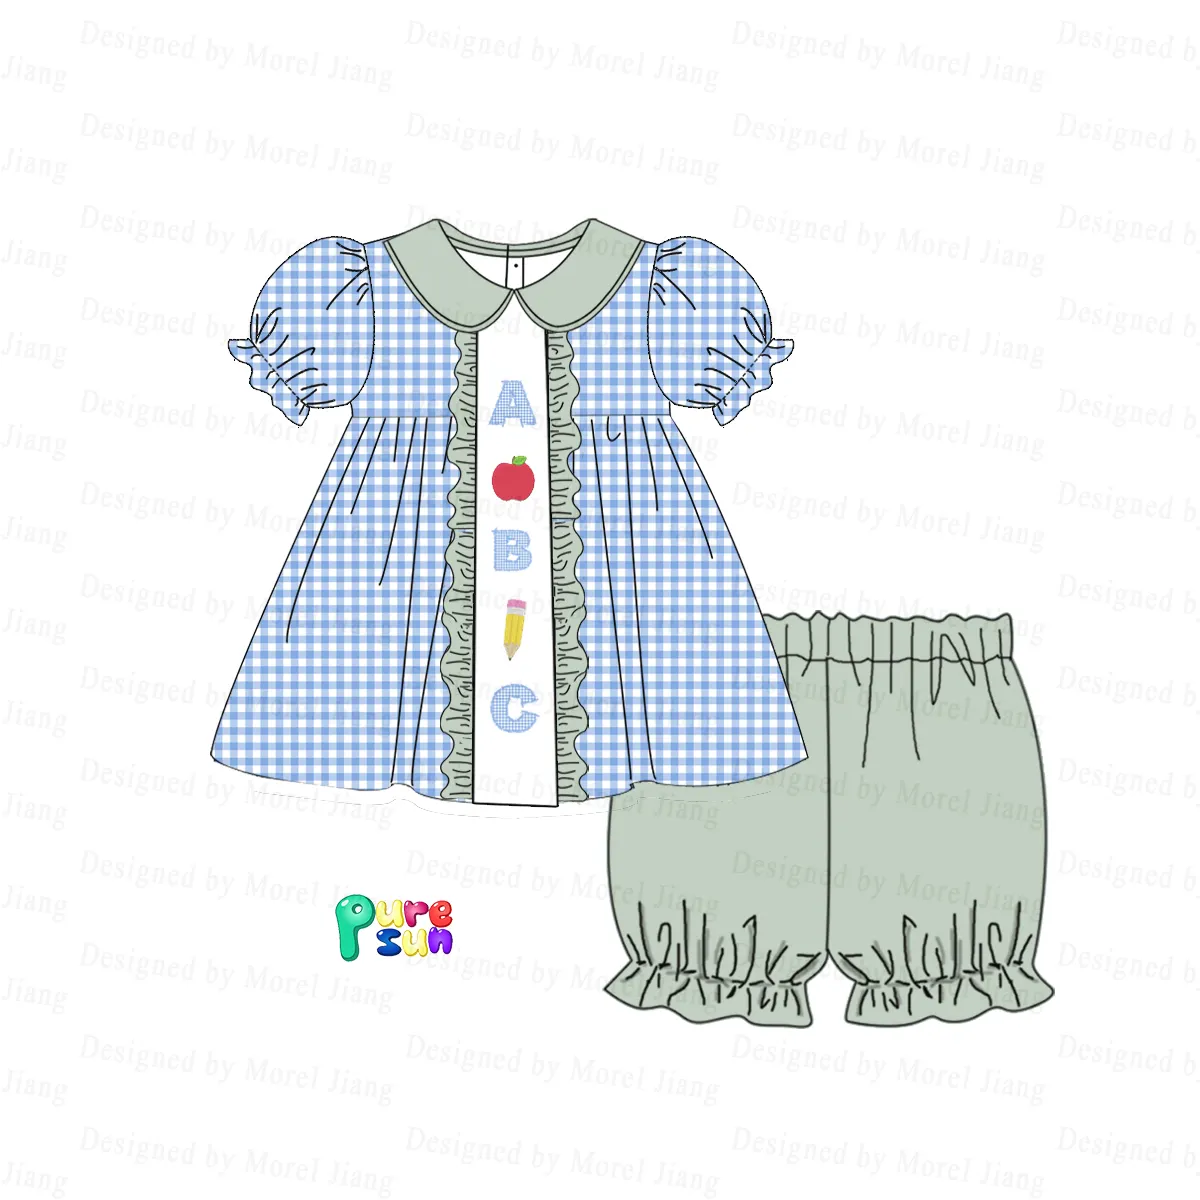 बैक टू स्कूल कैज़ुअल शॉर्ट्स-प्योरसन के लिए बुटीक होलसेल लड़कियों के कपड़ों का सेट